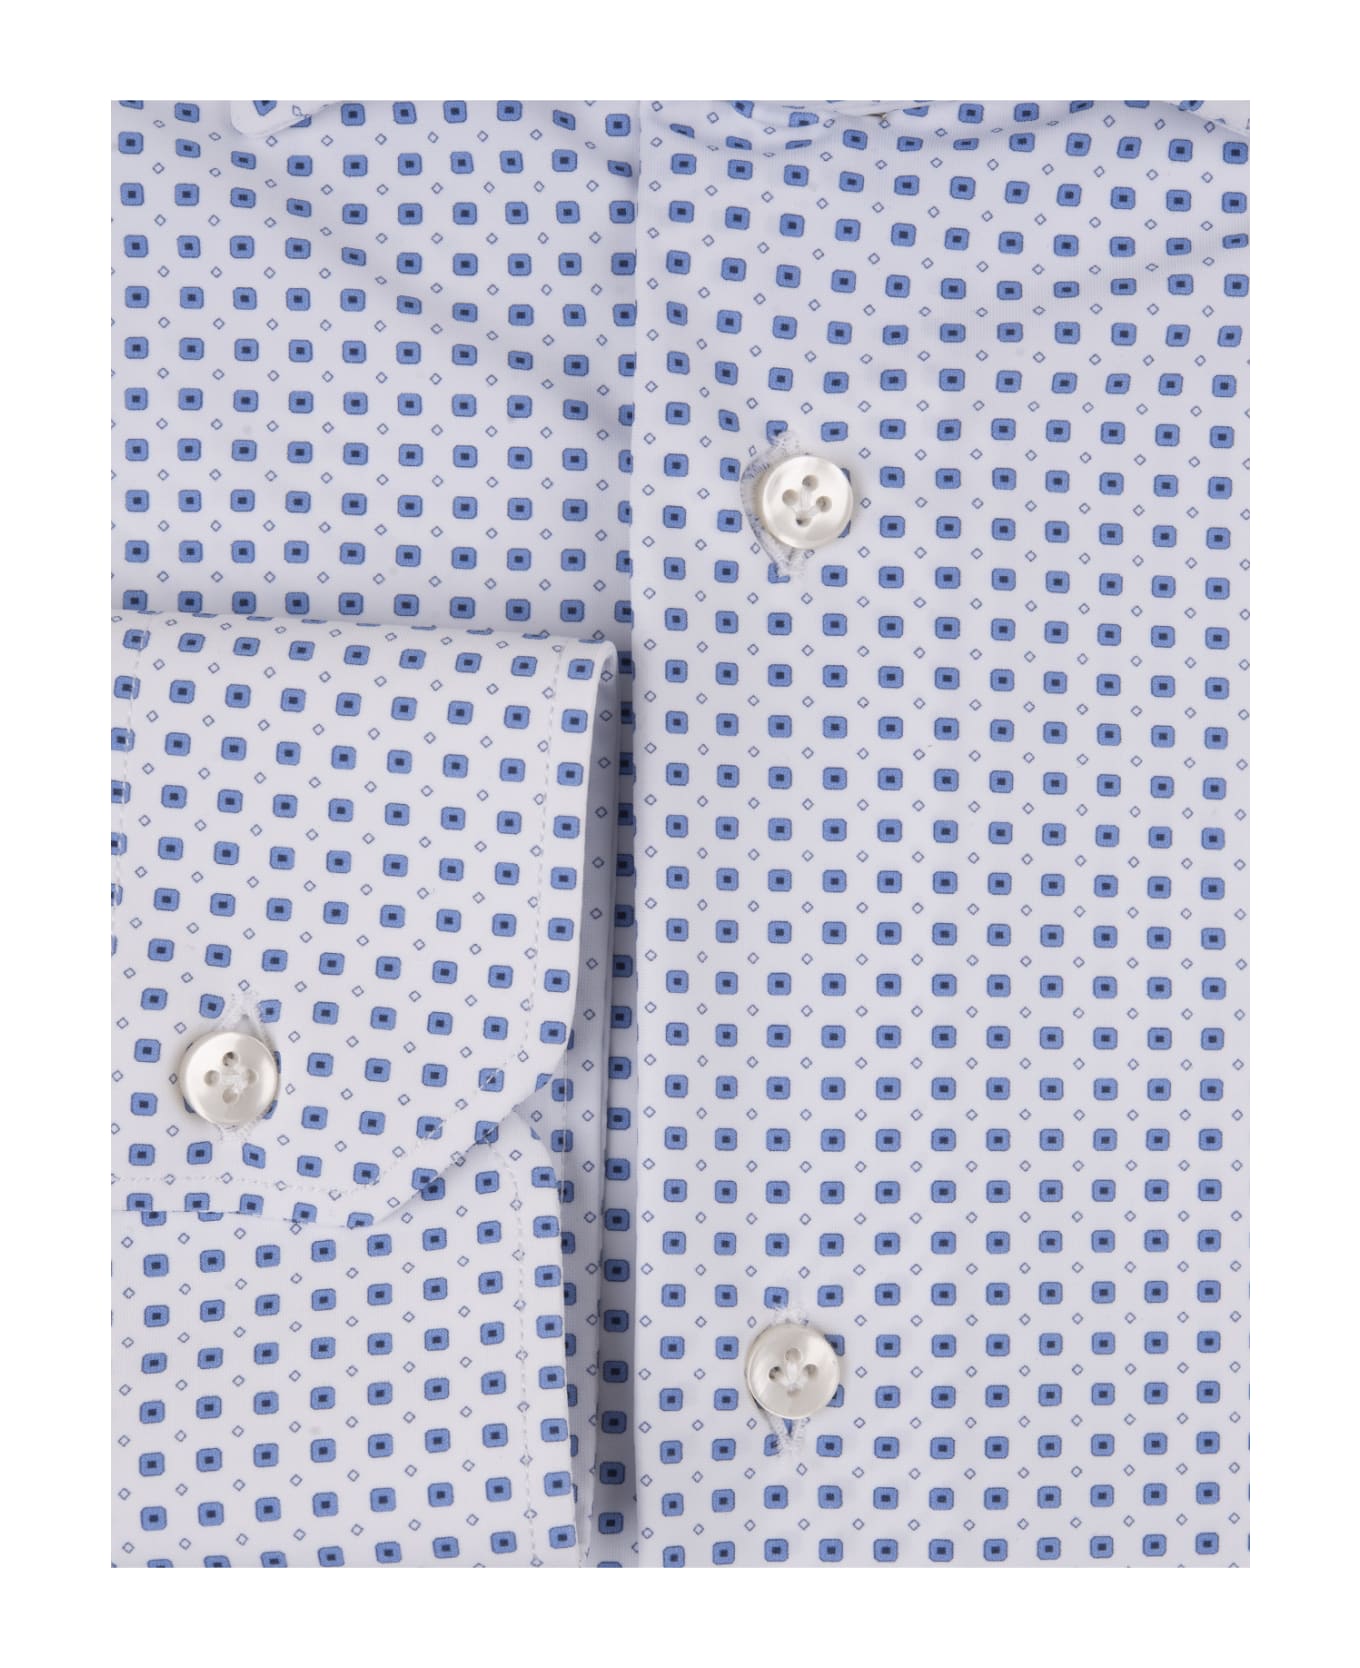 Sartorio Napoli White Shirt With Blue Micro Pattern - White シャツ